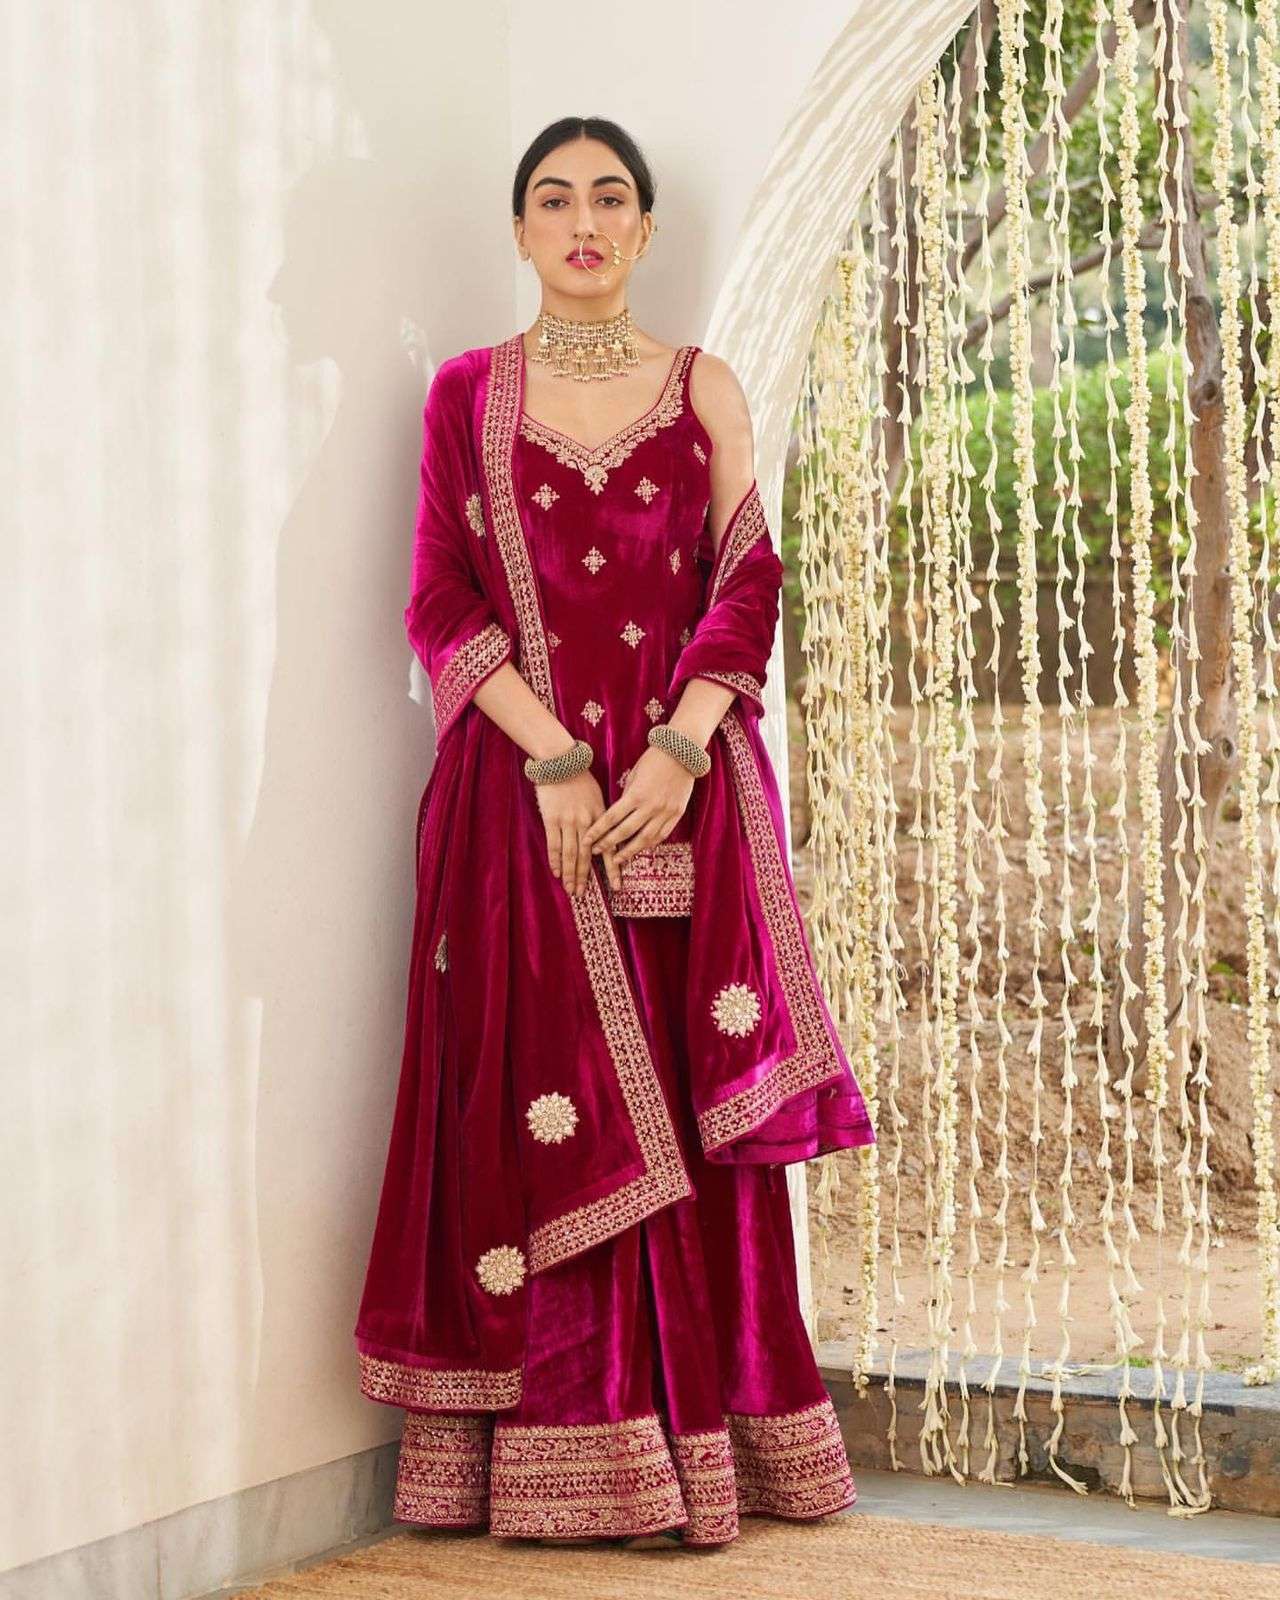 Green Velvet Kurta Sharara Palazo Set With Needle and Thread Work Indian  Pakistani Wedding Hand Made Embellished Outfit - Etsy